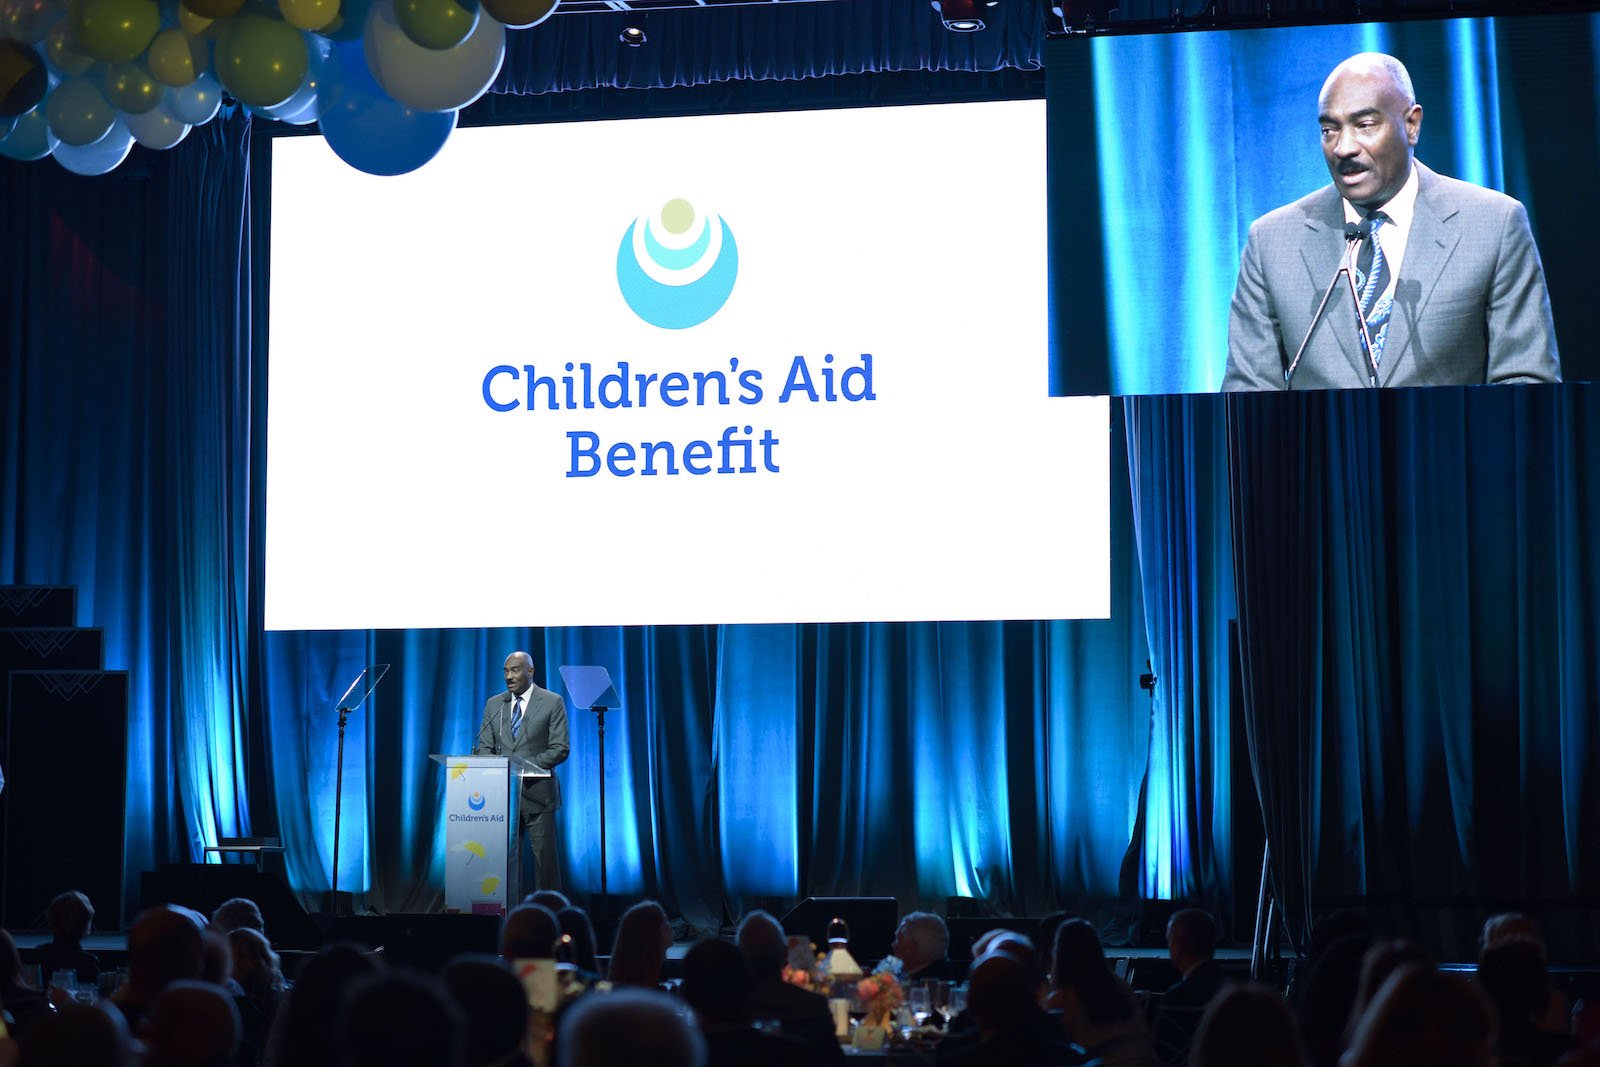 2021 Children's Aid Benefit